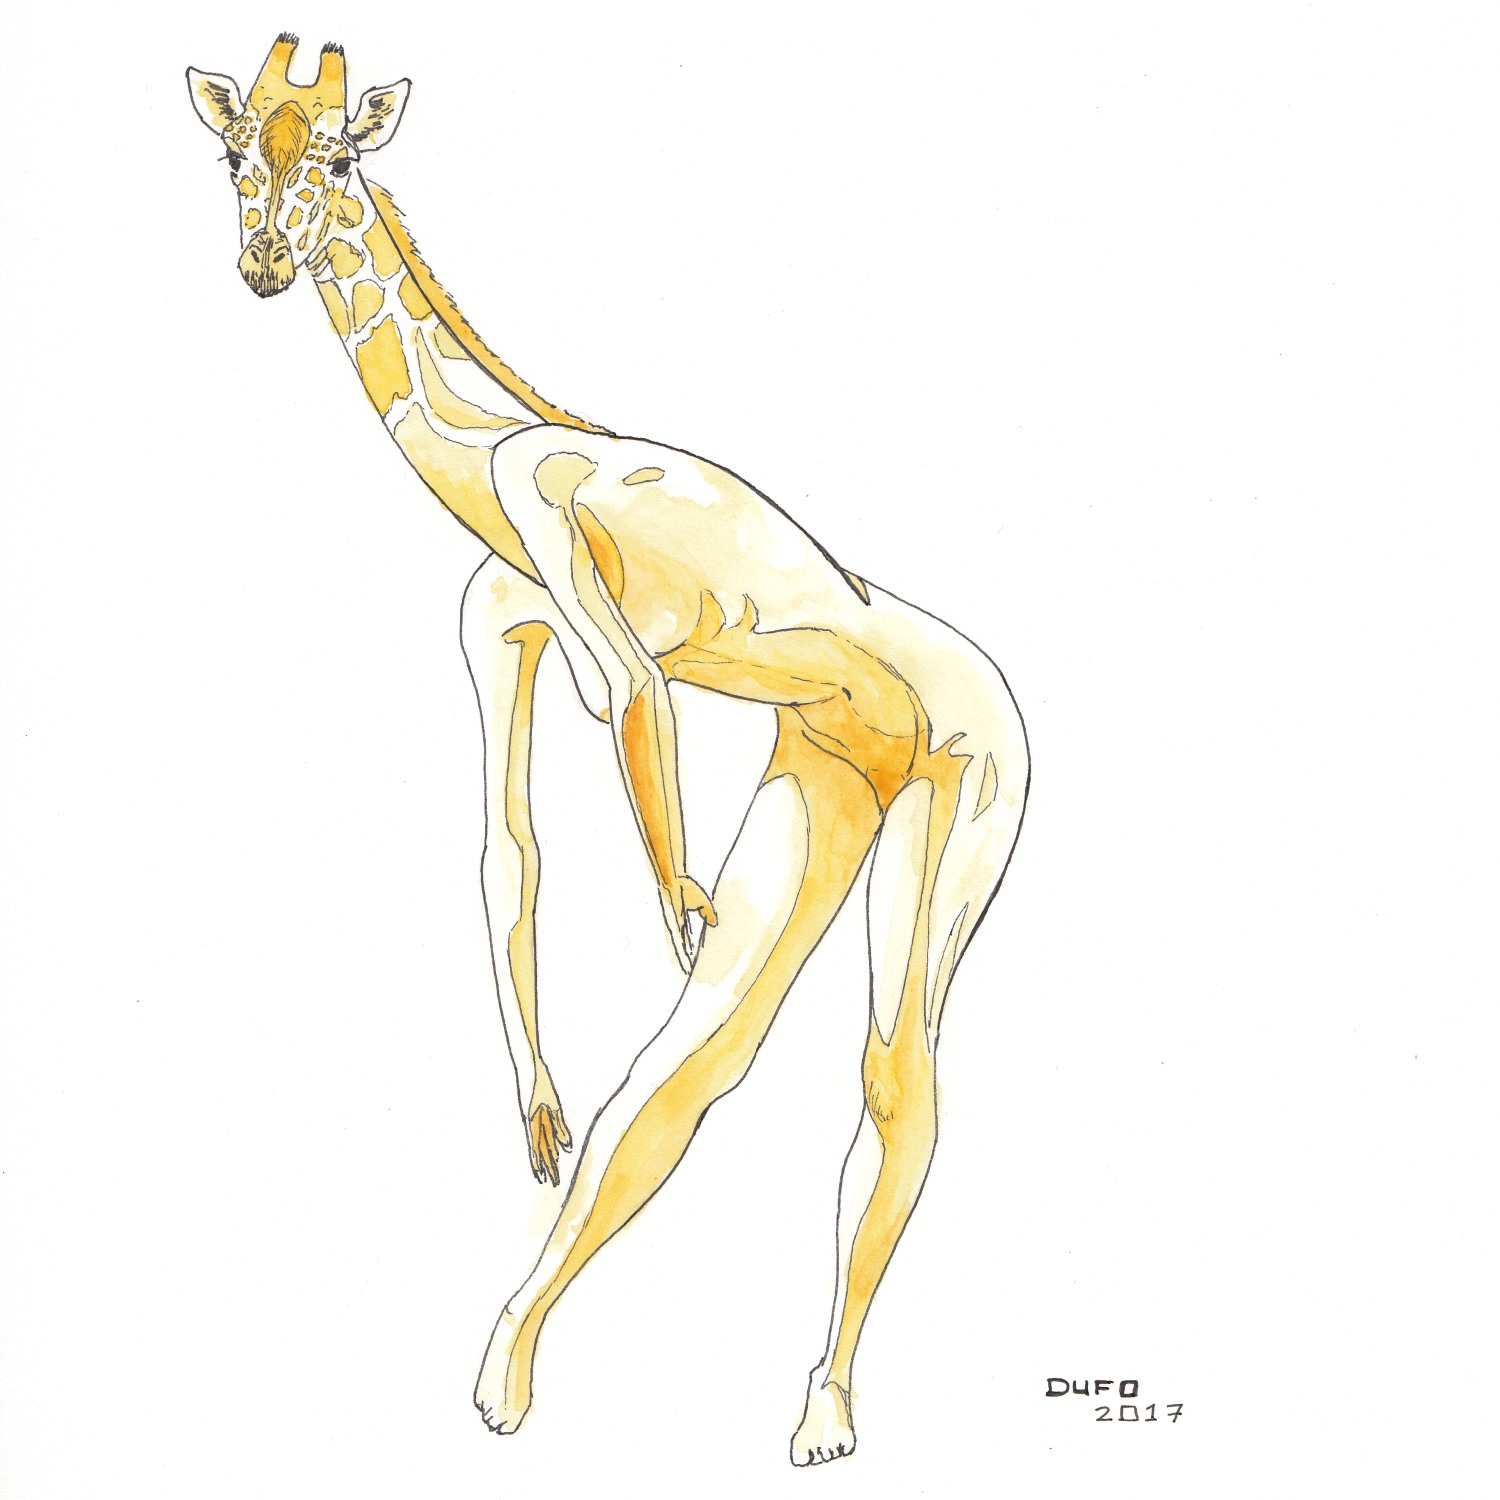 Tête de girafe